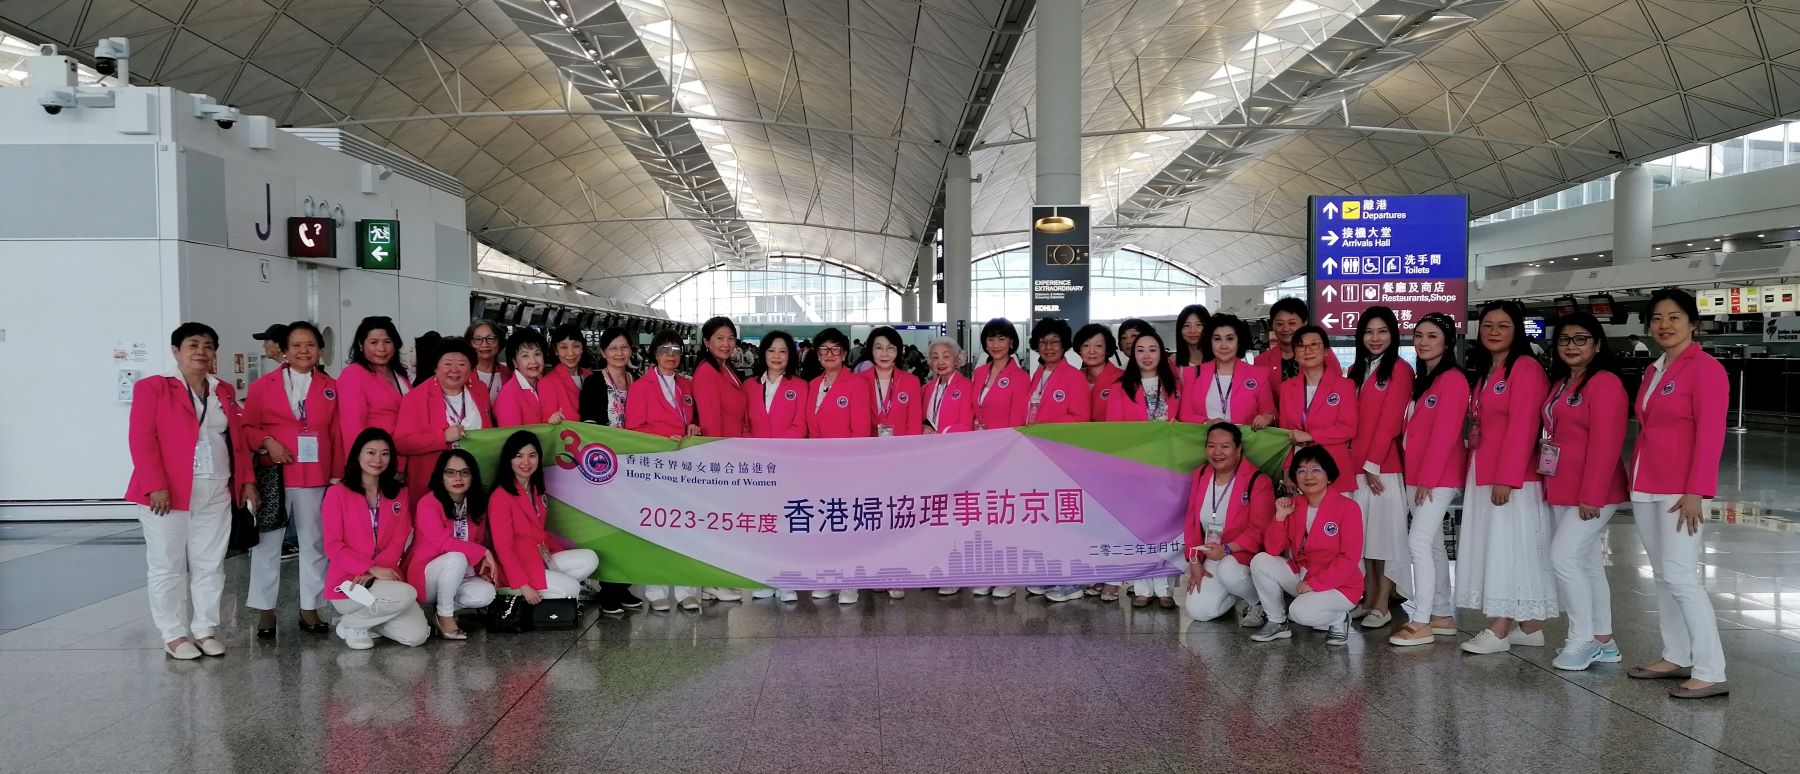 香港婦協組團訪京